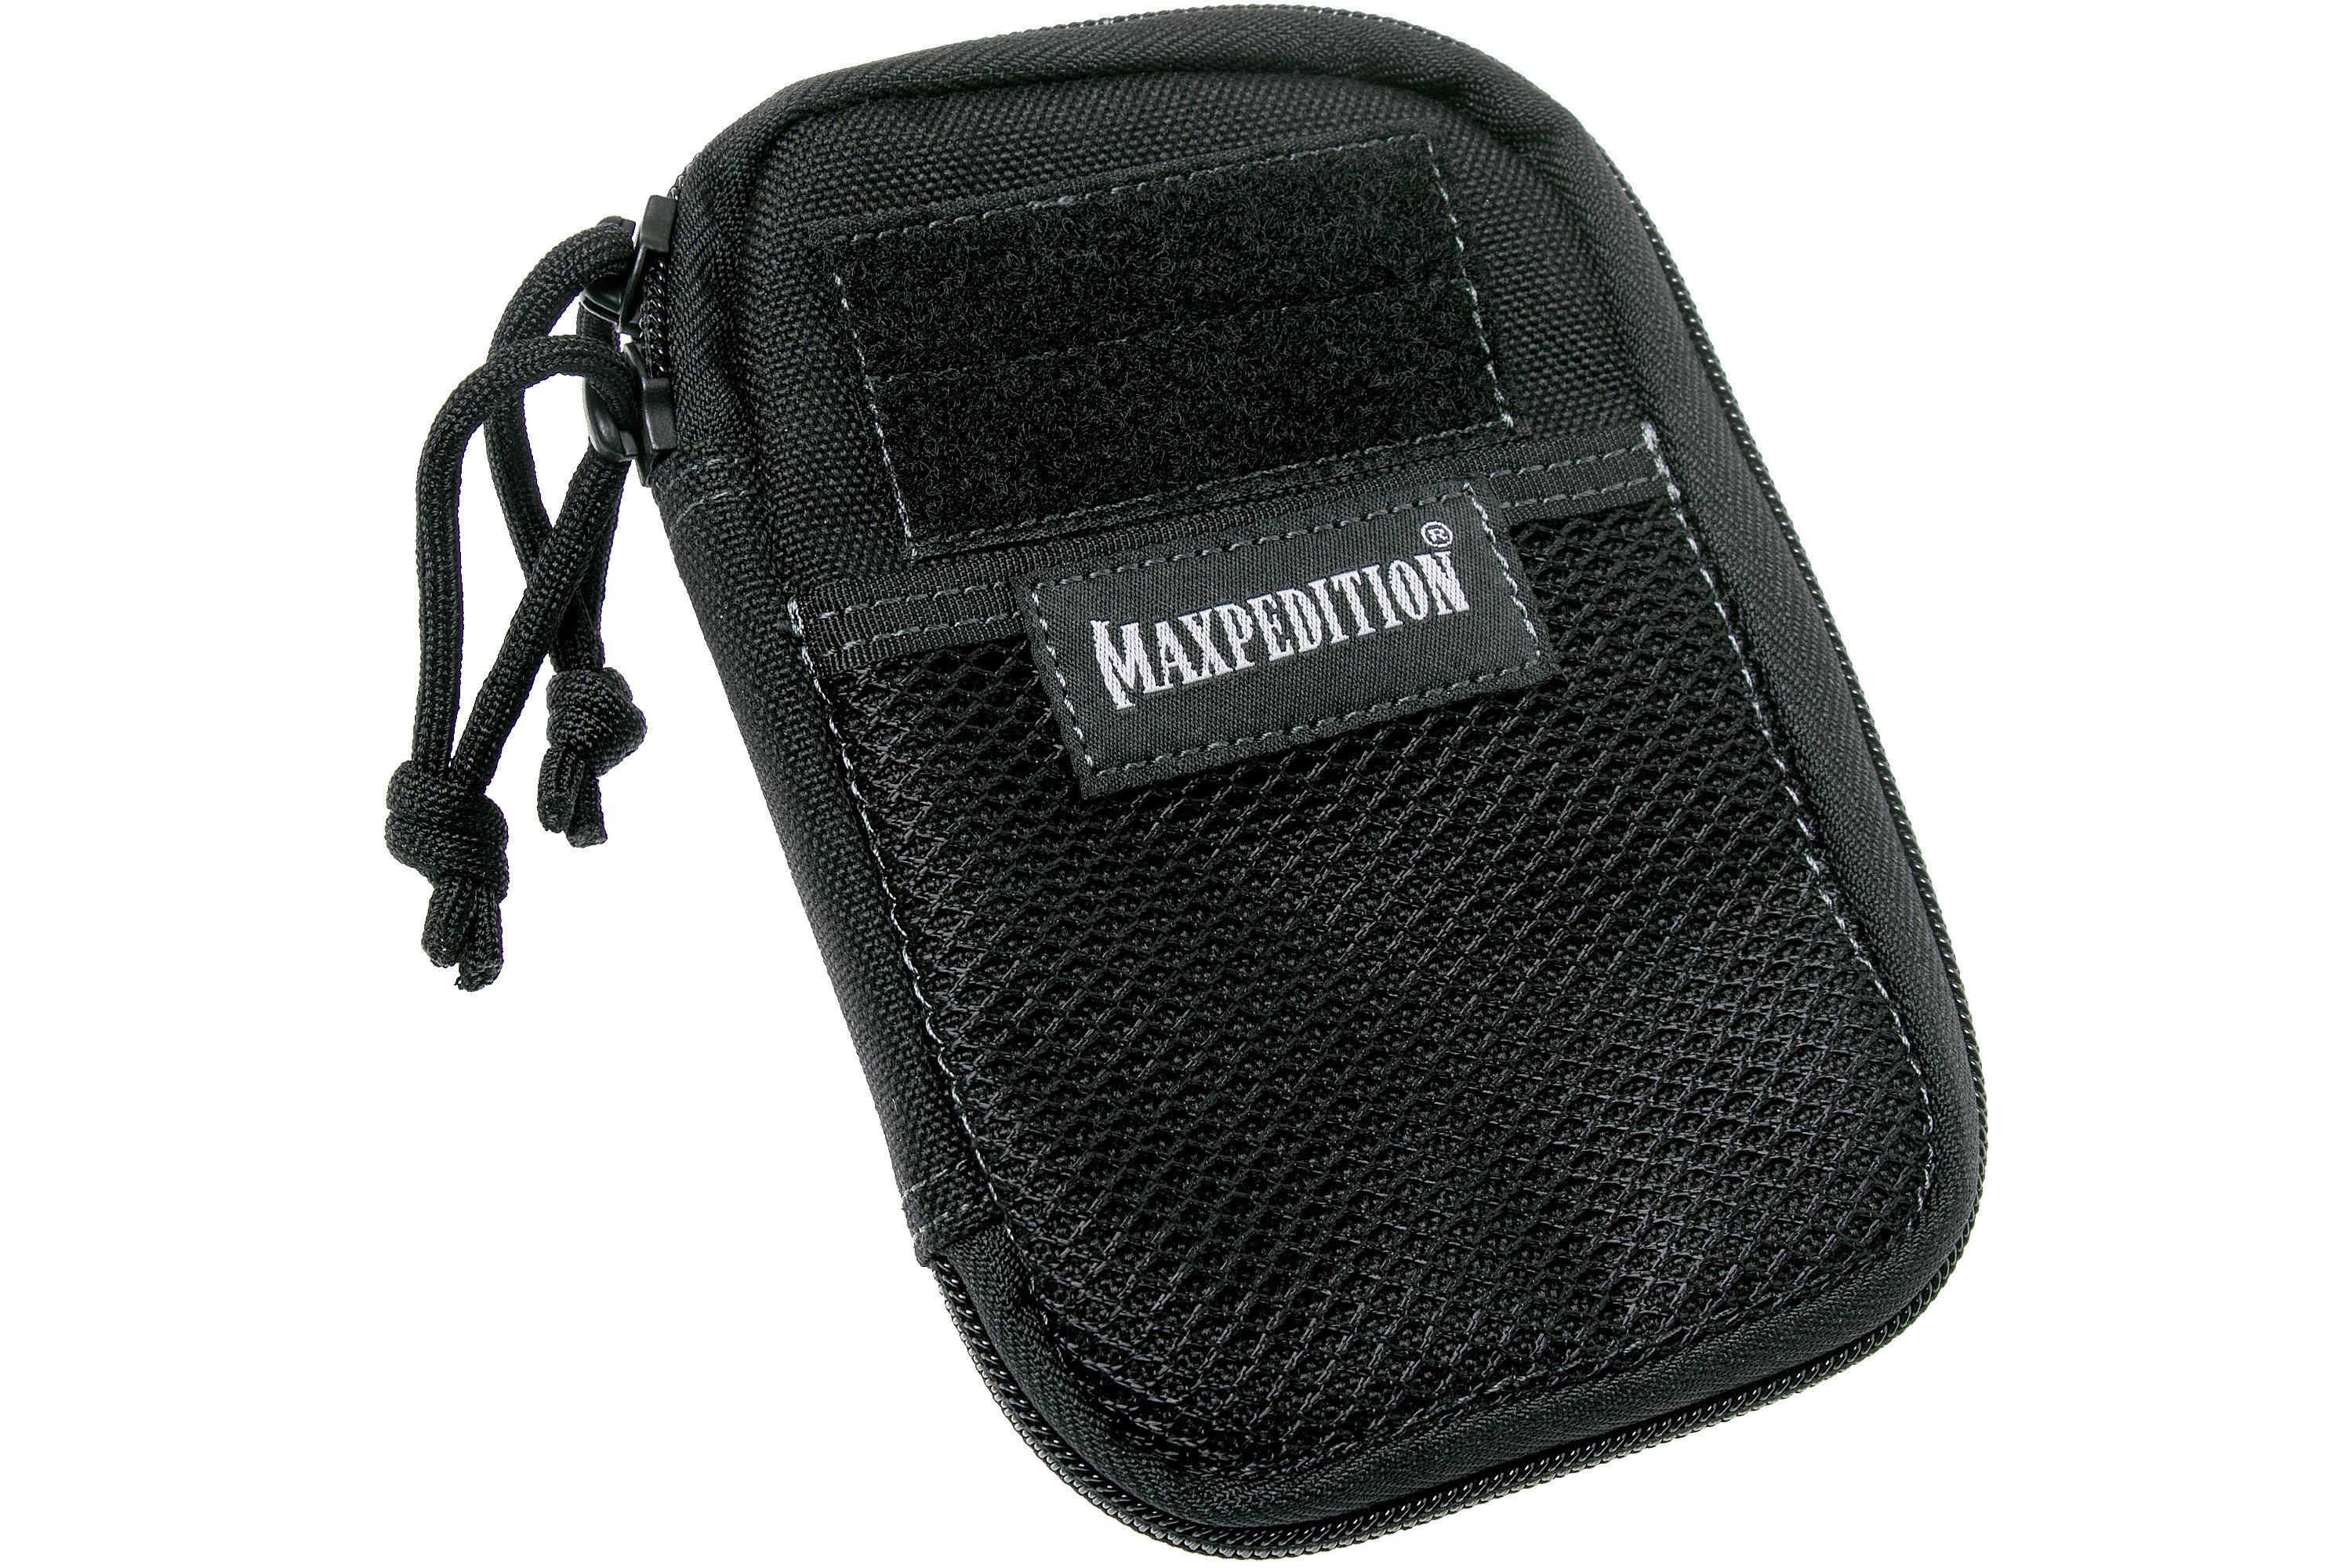 Maxpedition Mini Pocket Organizer pouch, black